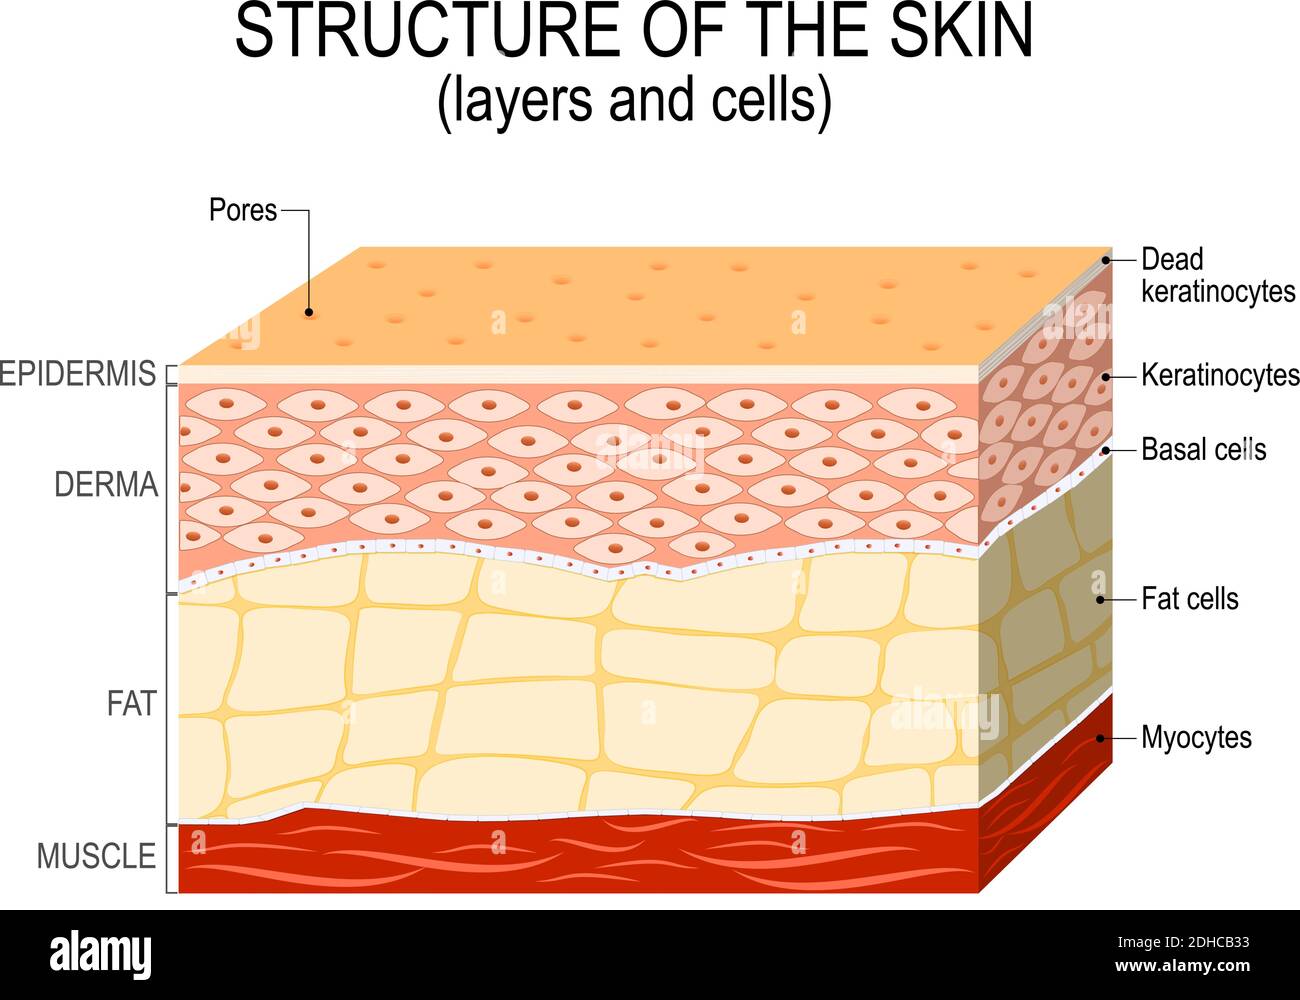 Structure de la peau humaine. Calques et cellules Illustration de Vecteur